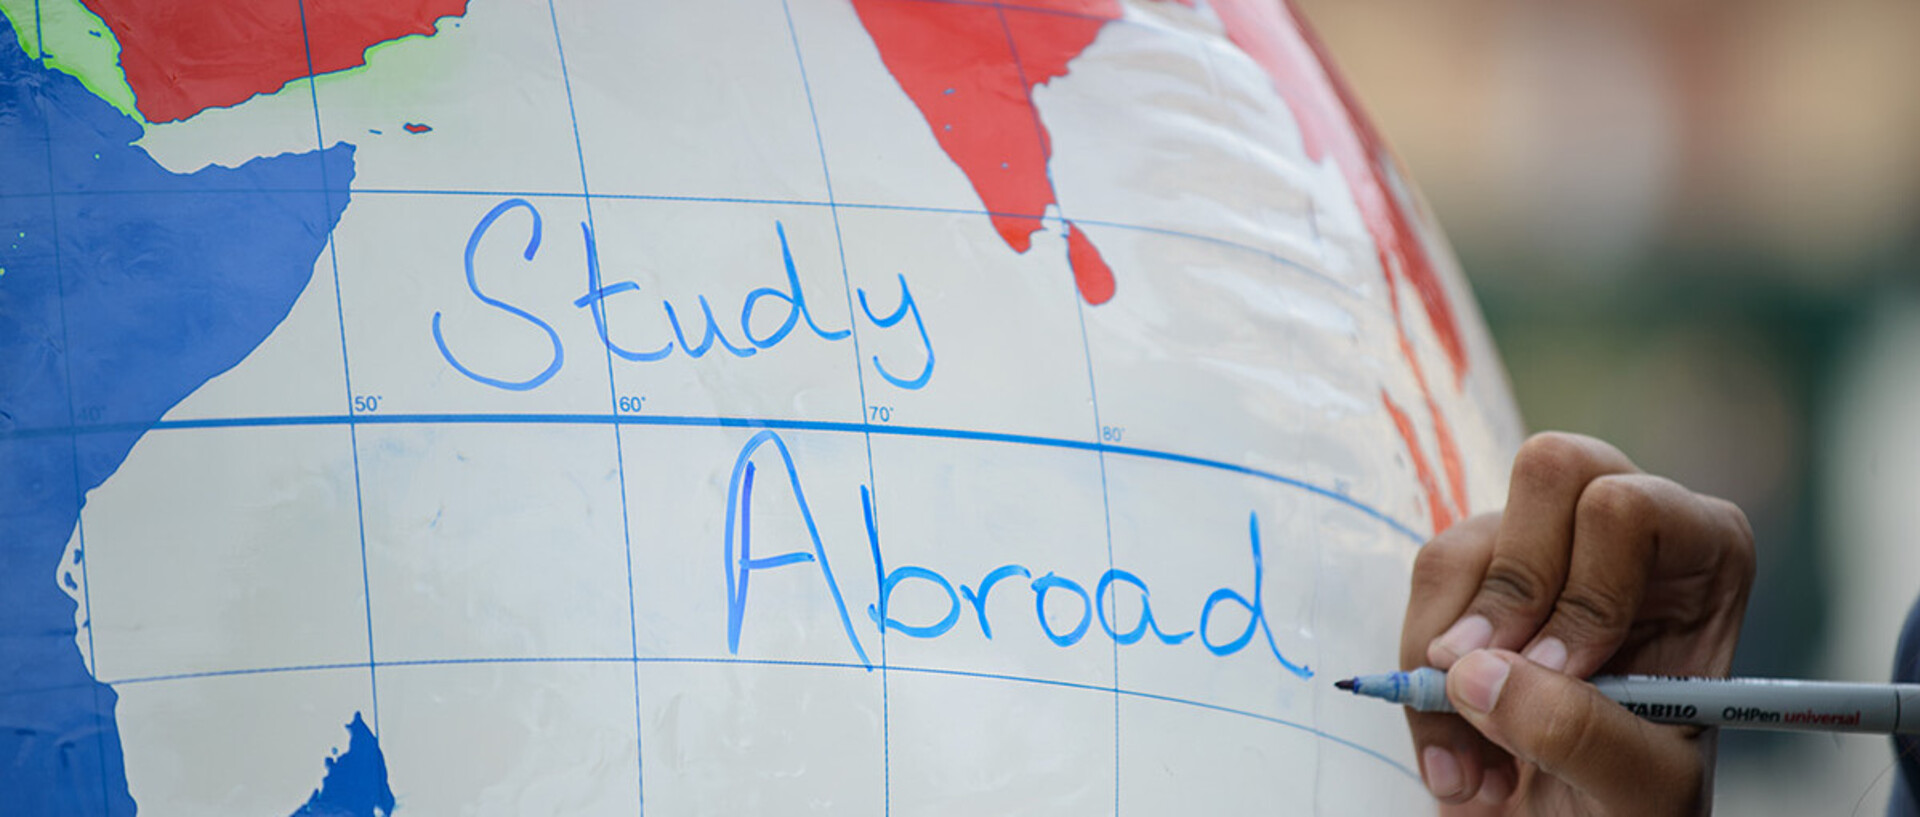 Eine Hand schreibt die Worte "Study abroad" auf einen aufgeblasenen Globus